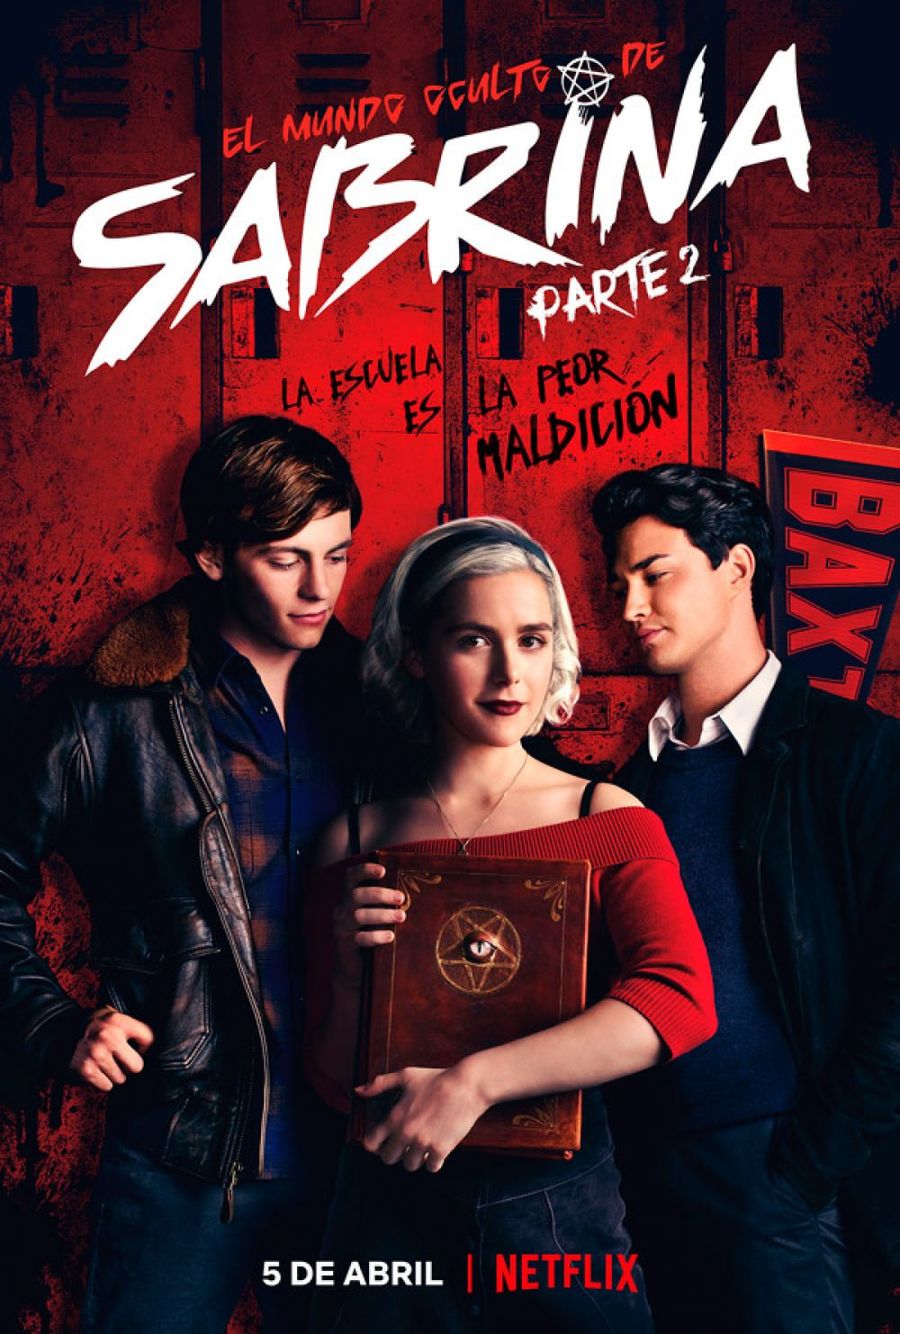 Adelanto. En El mundo oculto de Sabrina, que se estrenará el 5 de abril próximo, la joven bruja mostrará nuevos poderes. (ESPECIAL)